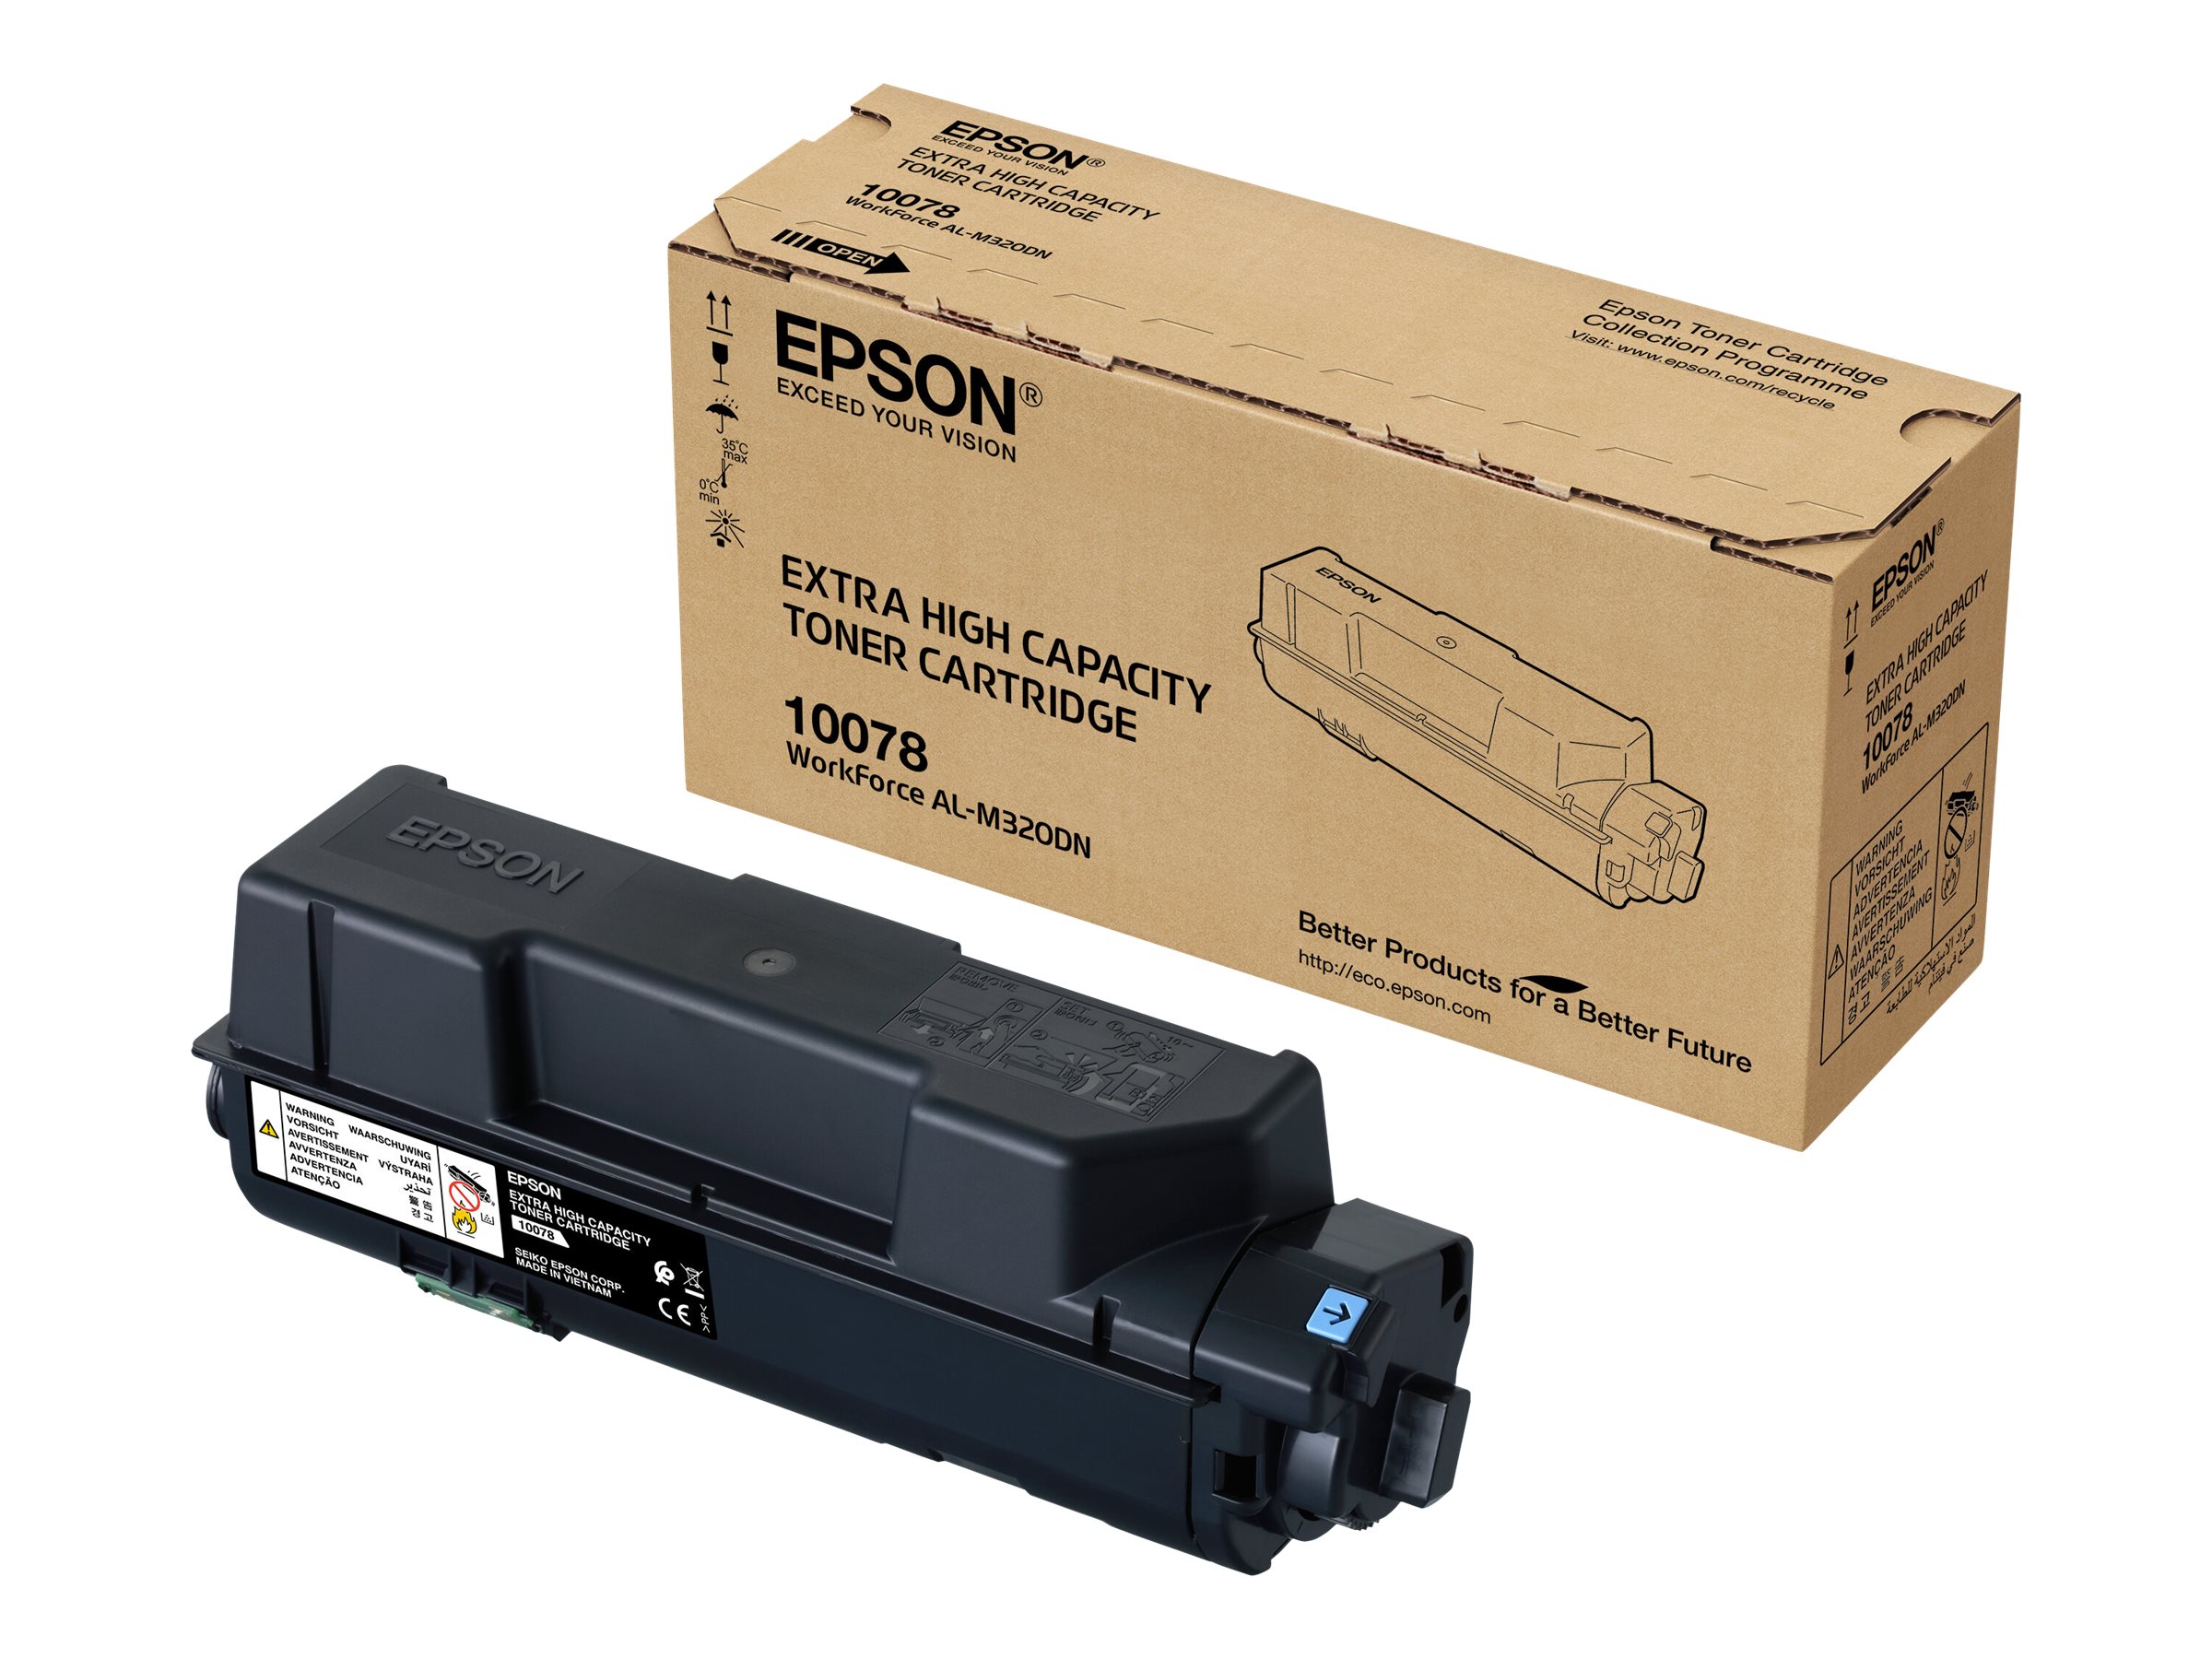 Epson S110078 - Capacité très élevée - noir - original - cartouche de toner - pour WorkForce AL-M320DN, AL-M320DTN - C13S110078 - Cartouches de toner